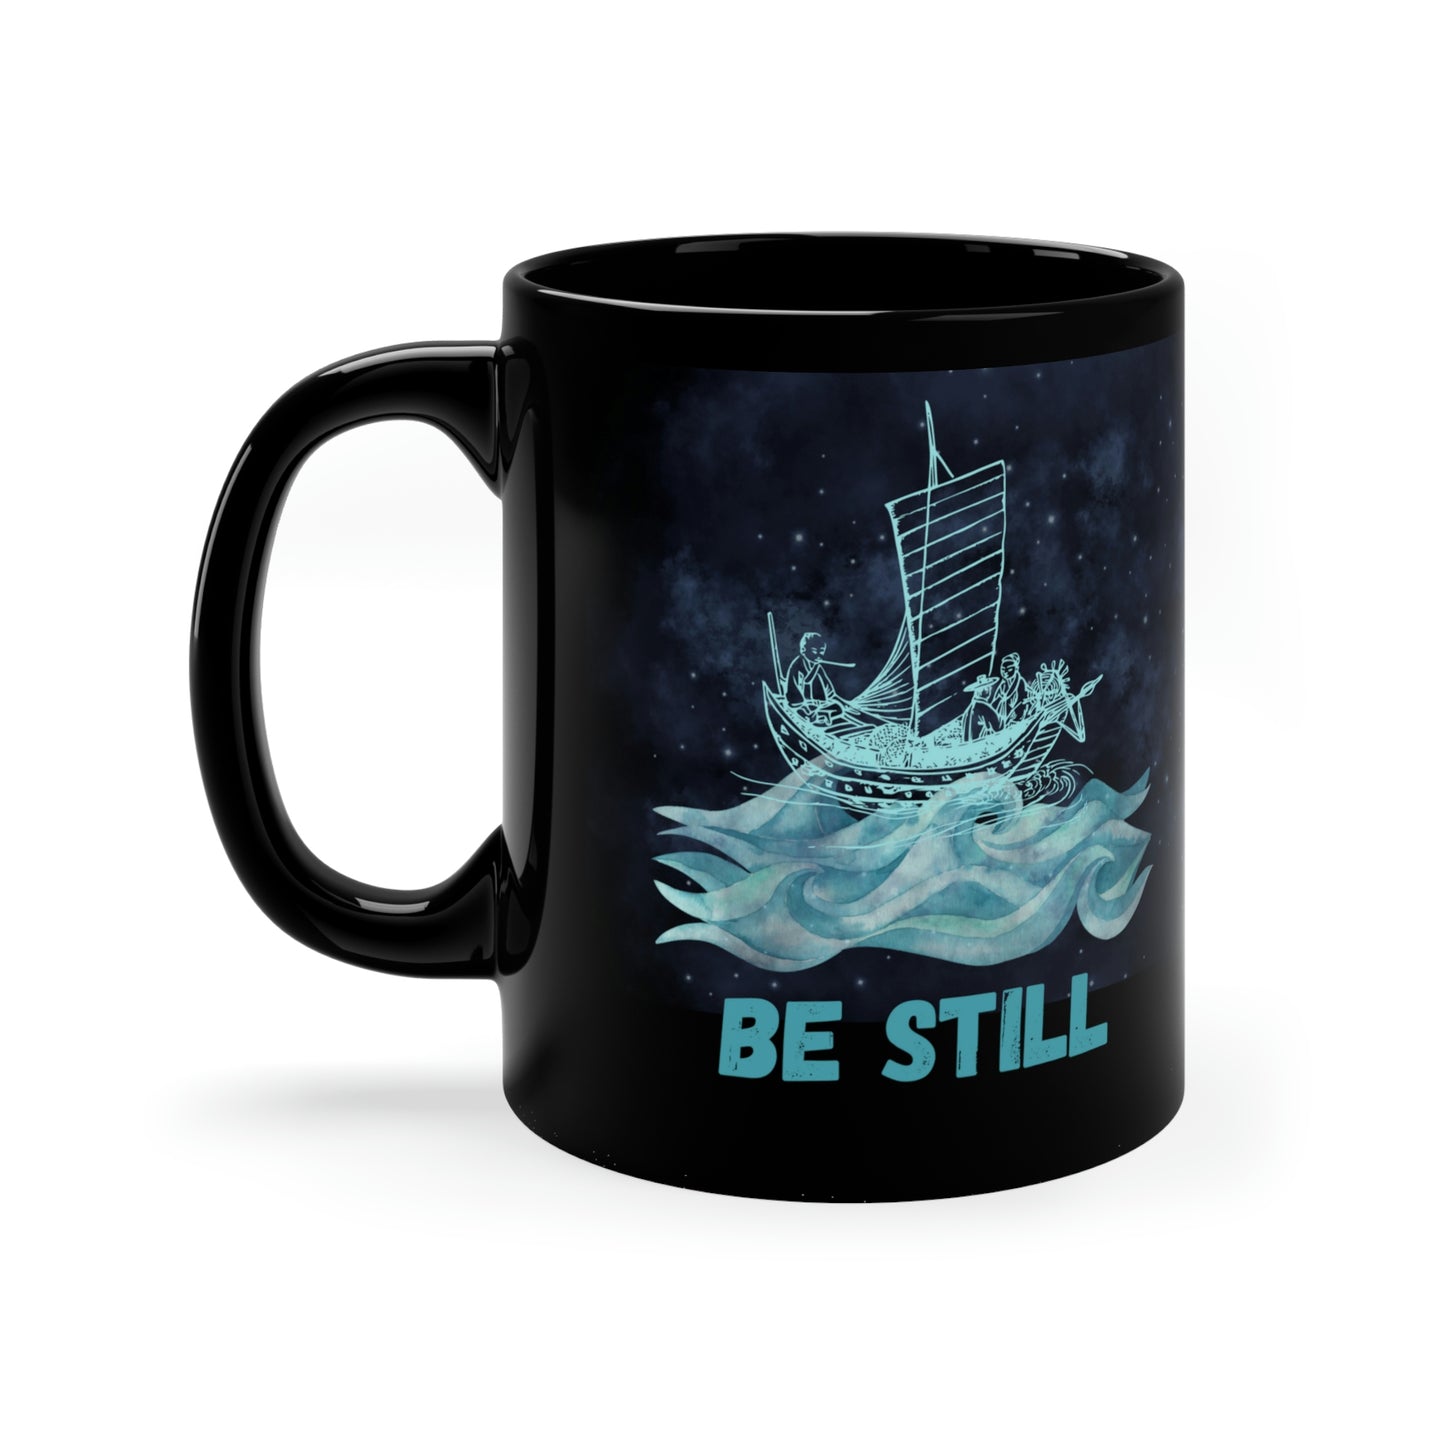 Be Still - Christian Coffee Mug 11oz